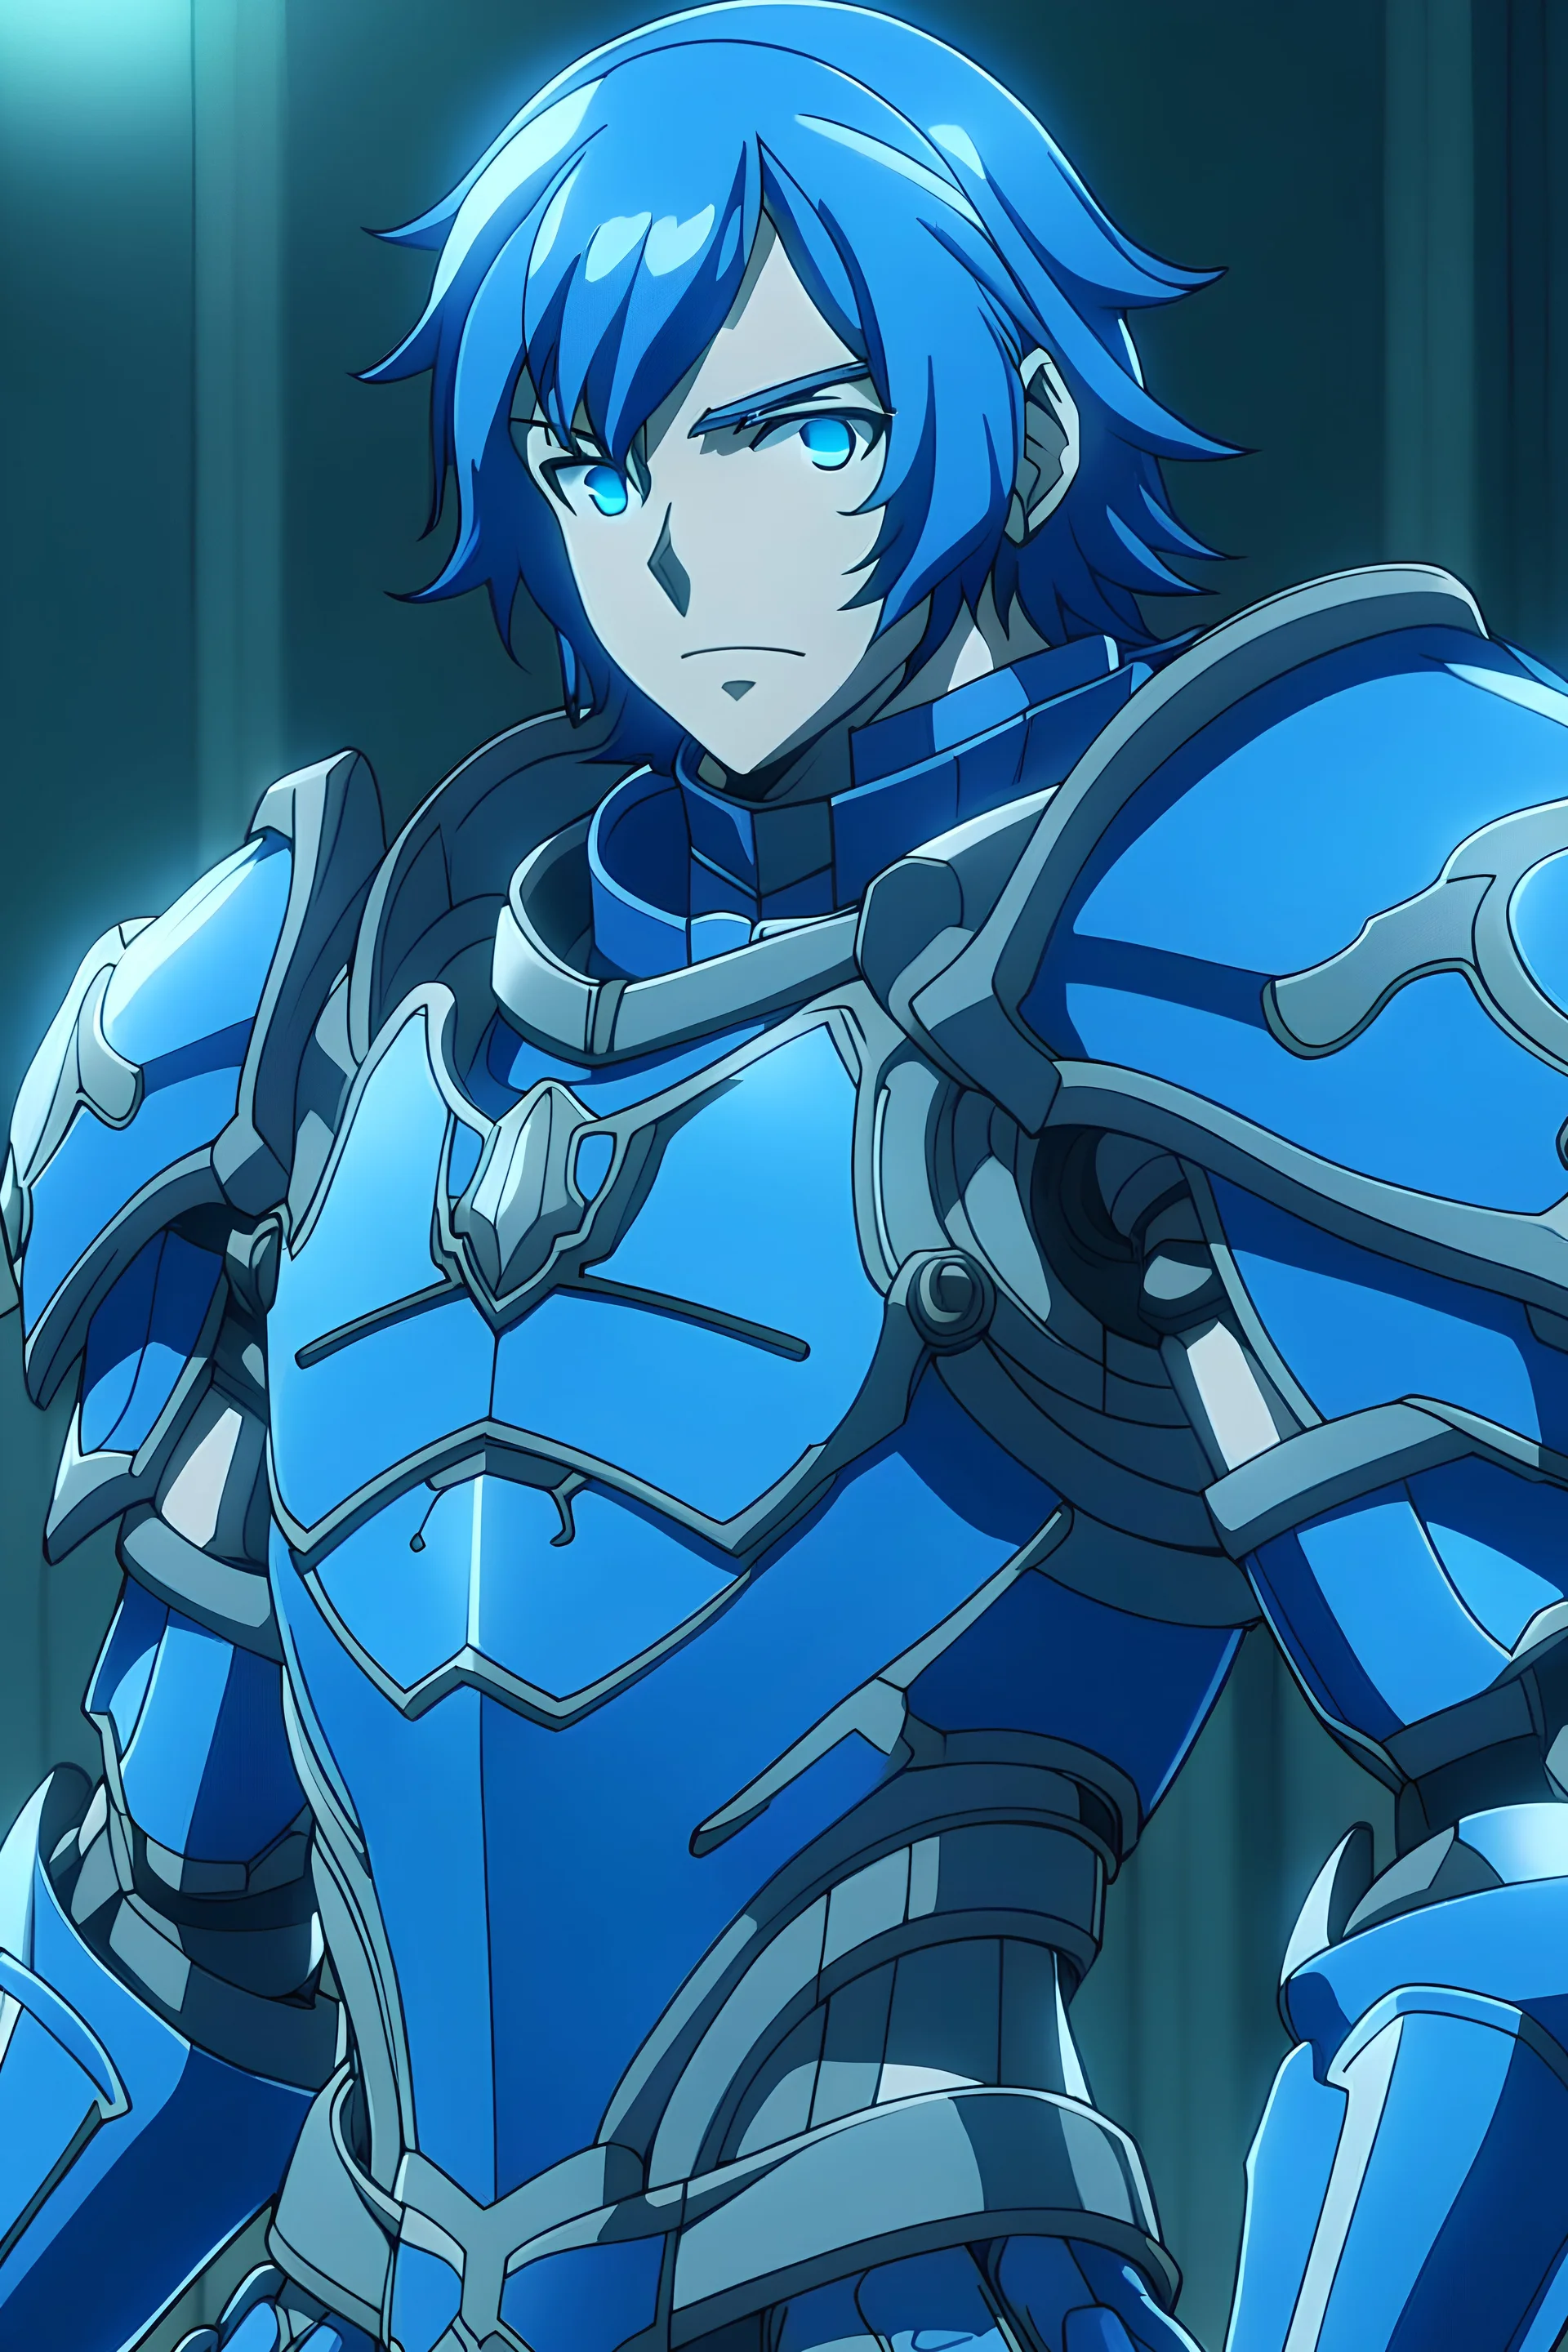 a man using a blue armor, anime style